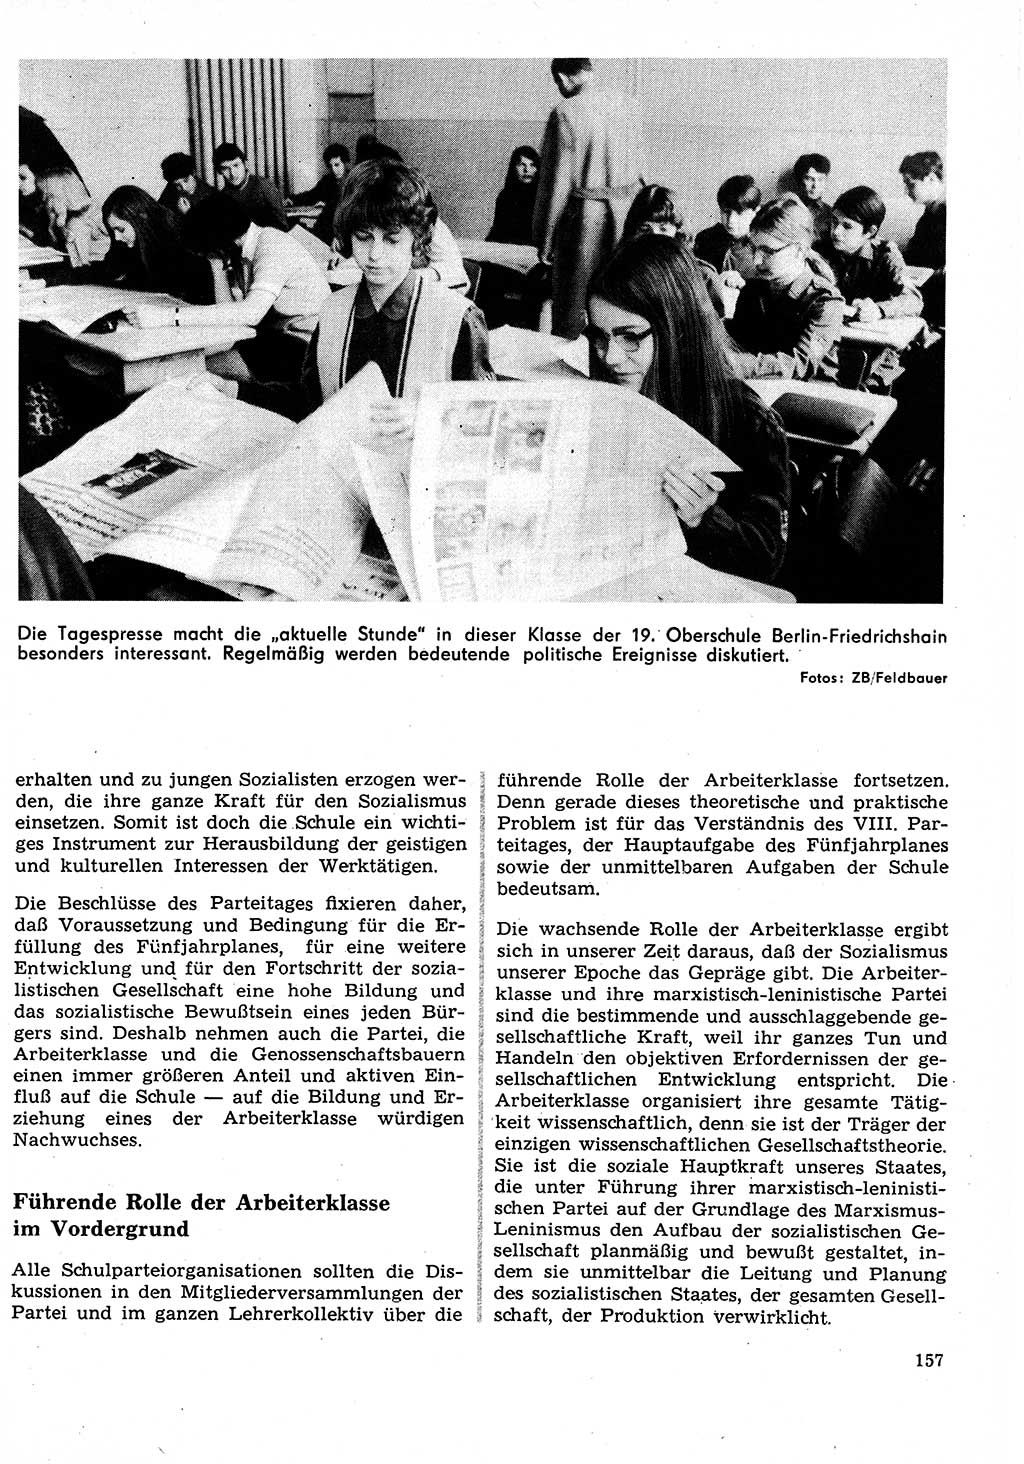 Neuer Weg (NW), Organ des Zentralkomitees (ZK) der SED (Sozialistische Einheitspartei Deutschlands) für Fragen des Parteilebens, 27. Jahrgang [Deutsche Demokratische Republik (DDR)] 1972, Seite 157 (NW ZK SED DDR 1972, S. 157)